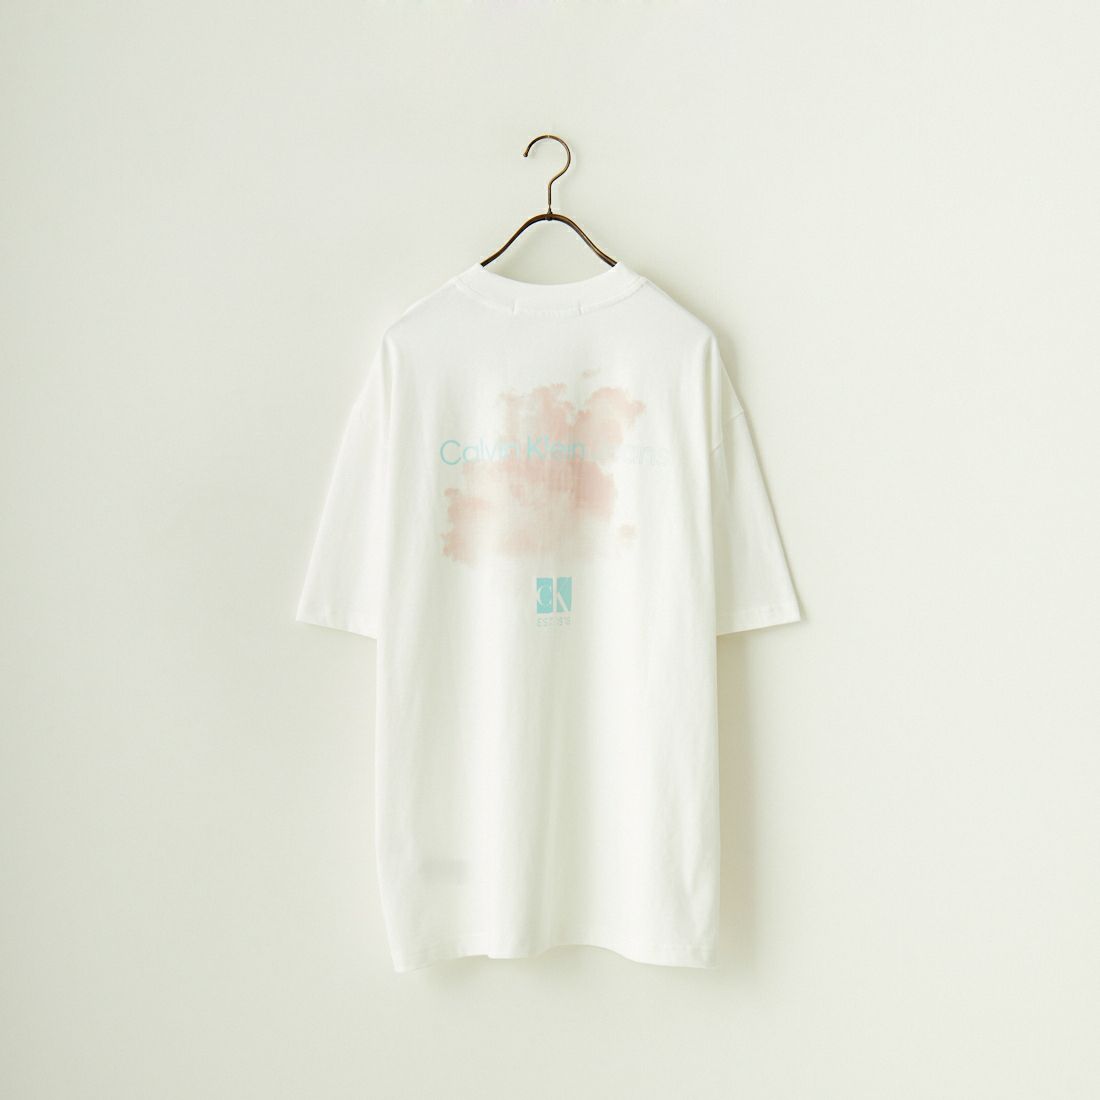 Calvin Klein [カルバンクライン] ショートスリーブ ディフューズロゴTシャツ [J400399]